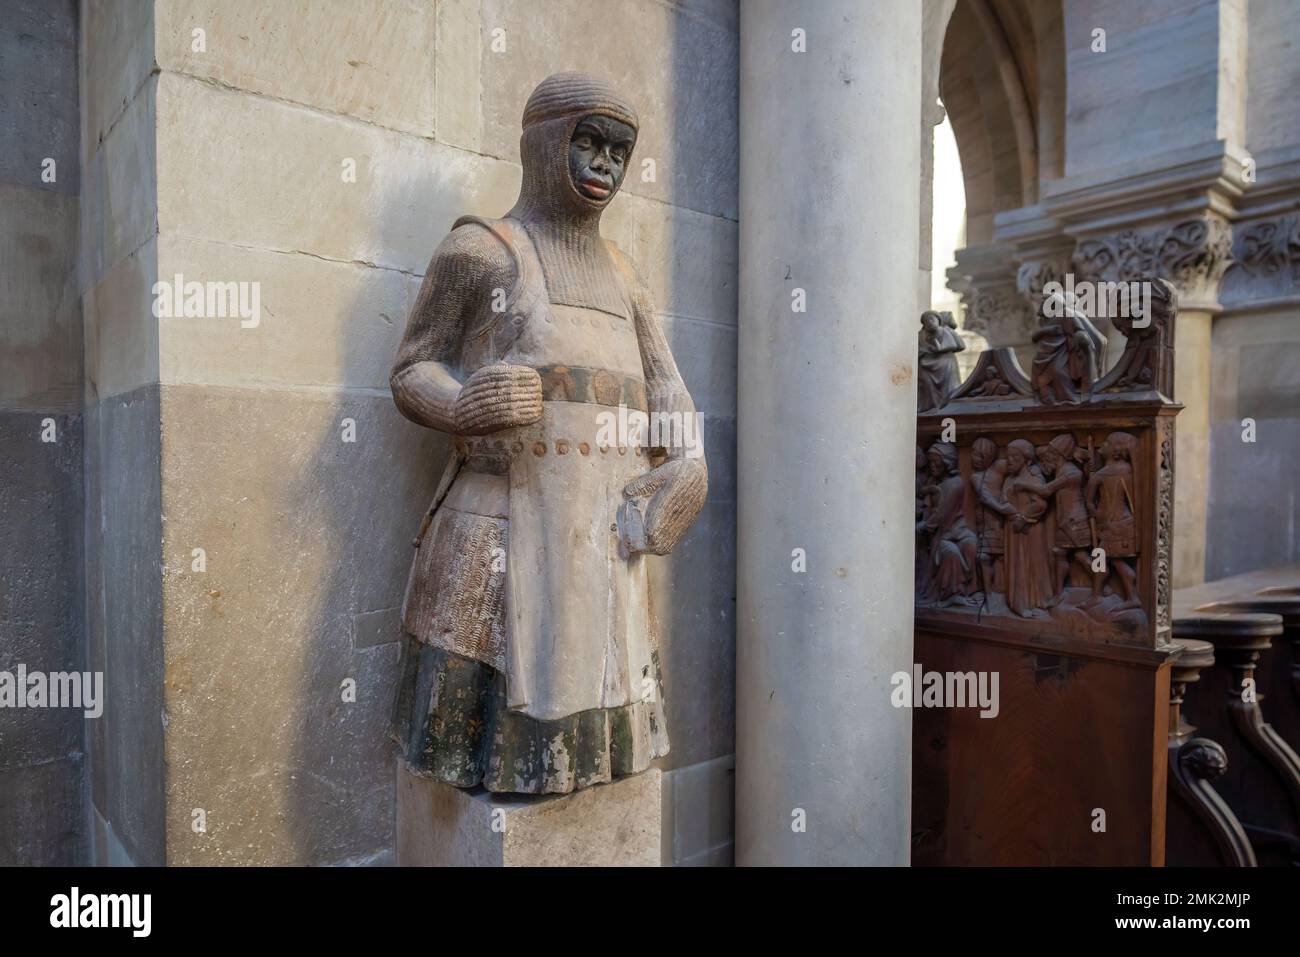 Statue des Heiligen Maurice im Inneren der Magdeburger Kathedrale - Magdeburg, Deutschland Stockfoto